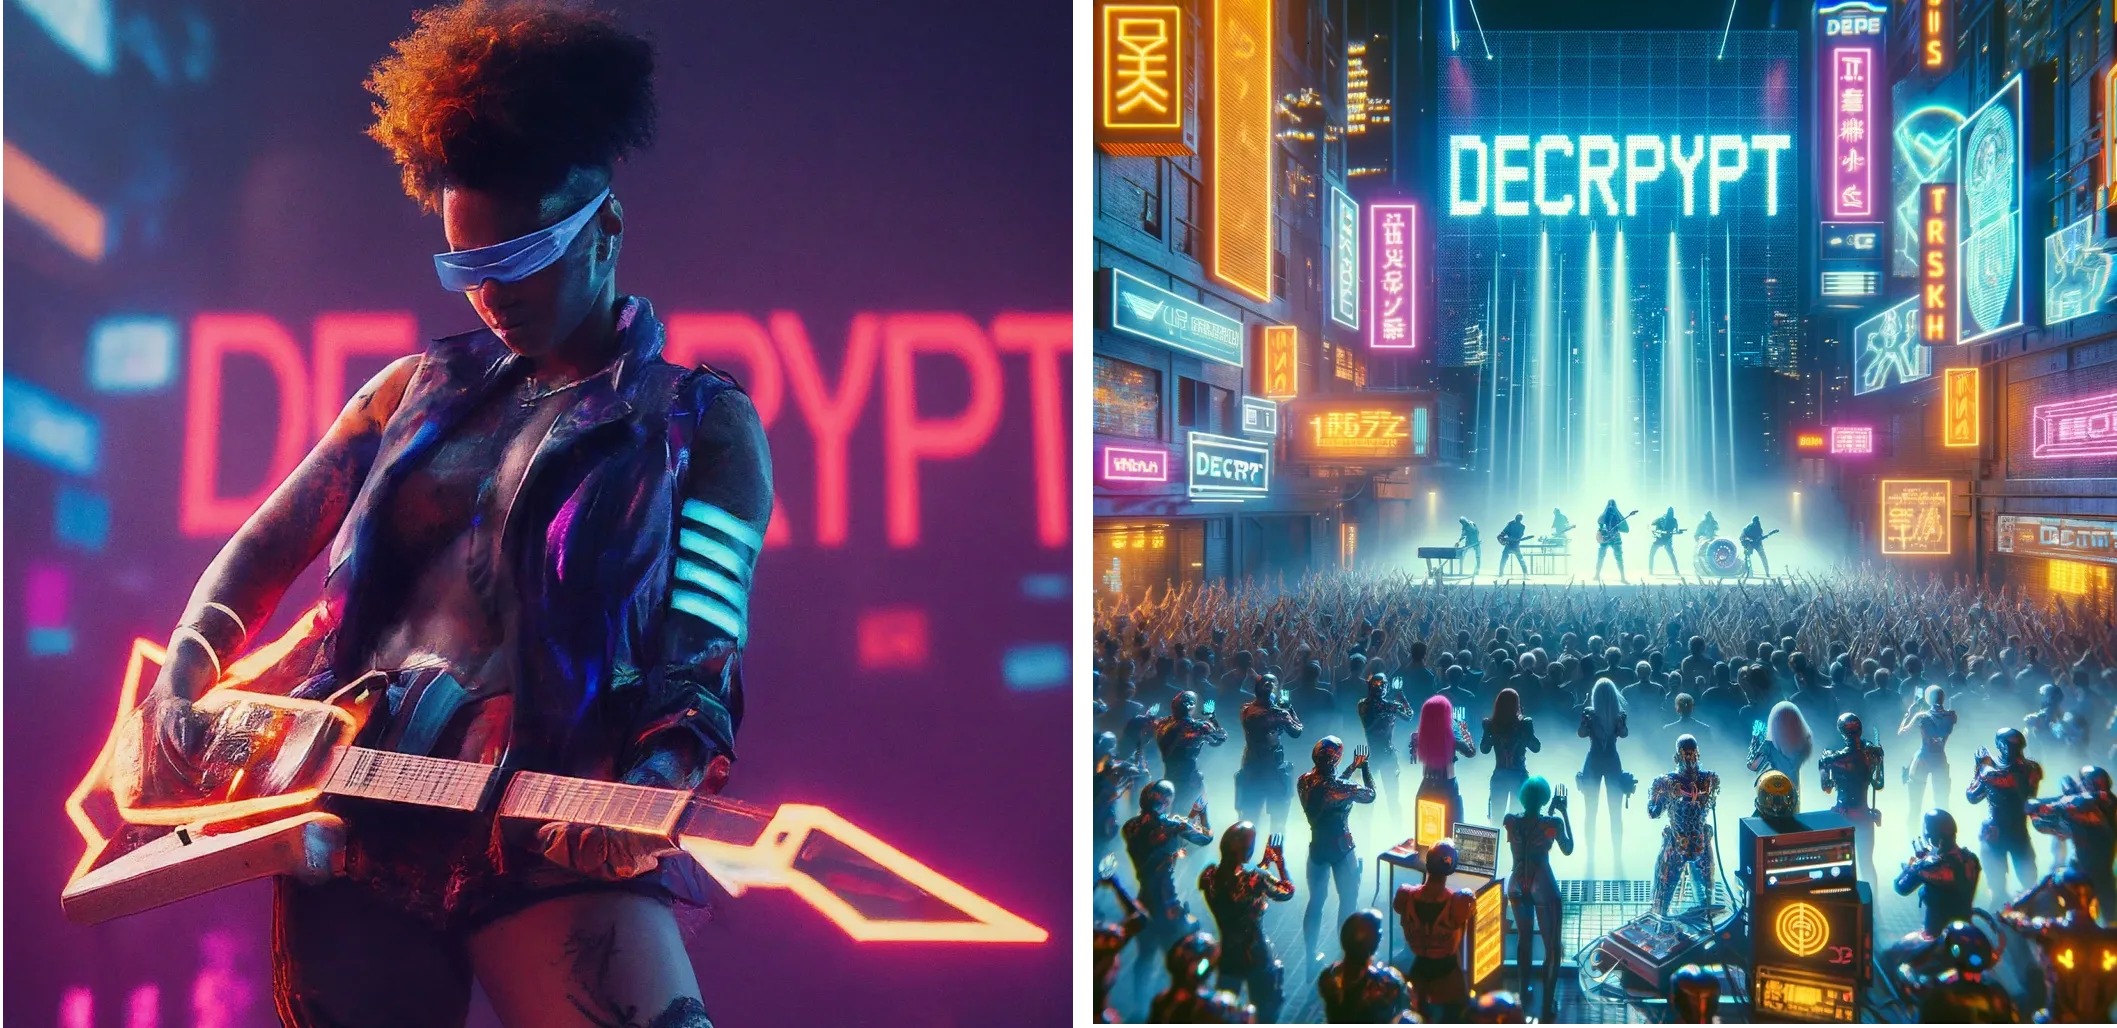 Cyberpunk-futuristische artiest treedt op op het podium met het woord "DECRYPT" in neonlichten op de achtergrond. Gemini (links) versus ChatGPT Plus (rechts)